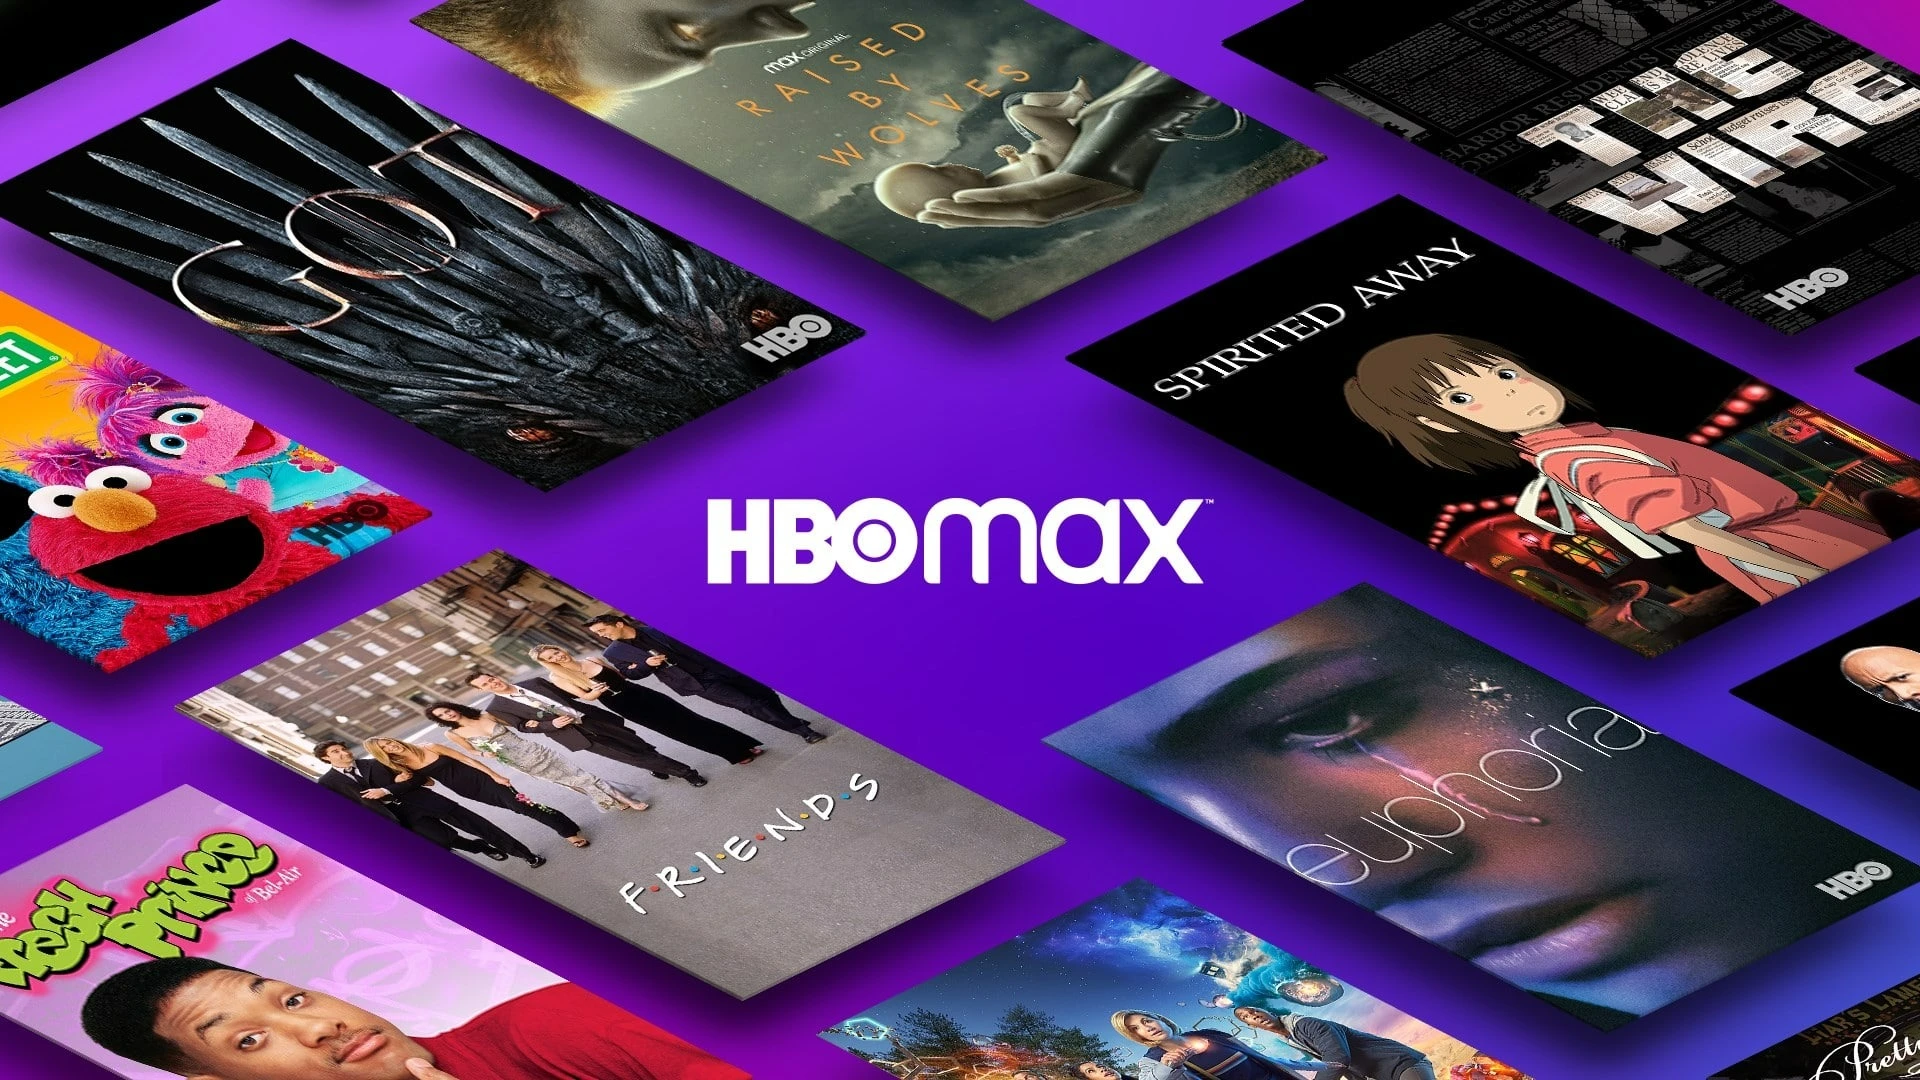 5 filmes de ficção-científica para assistir no HBO Max